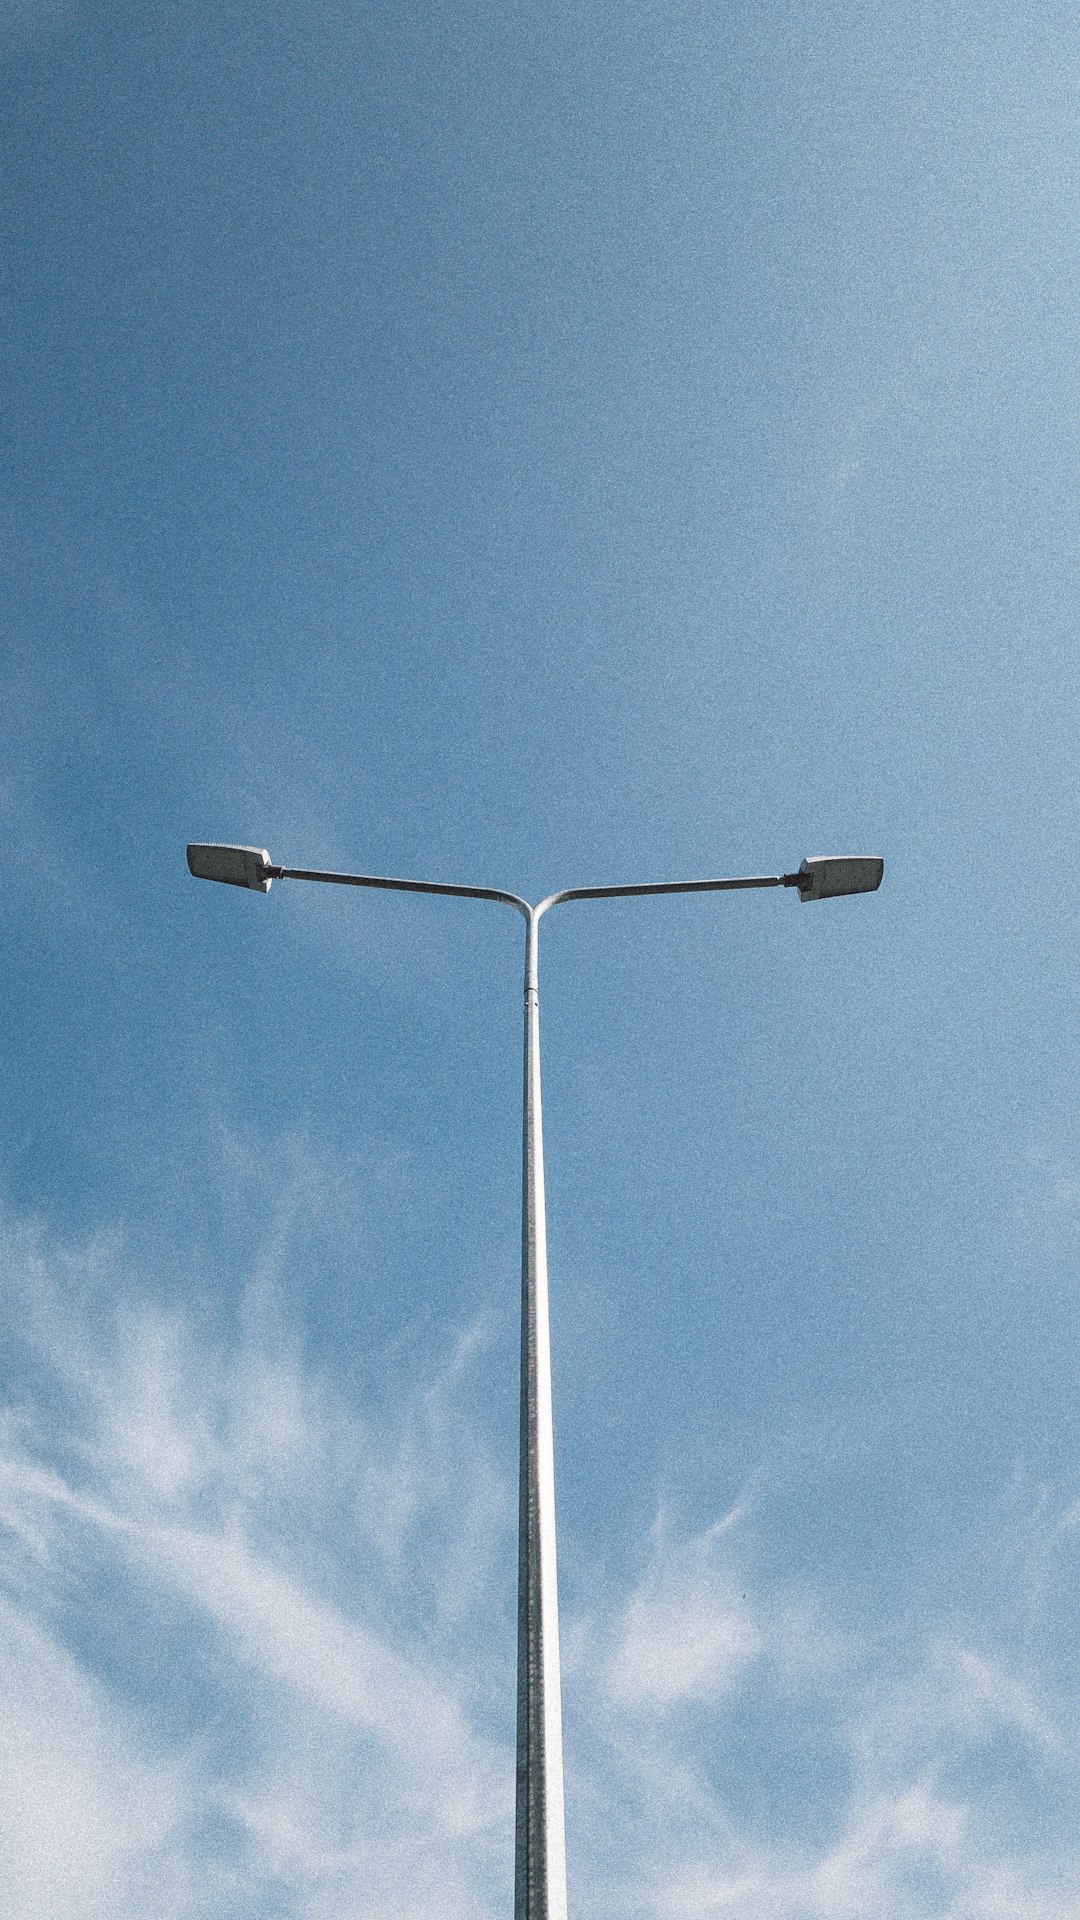 white street light under blue sky during daytime